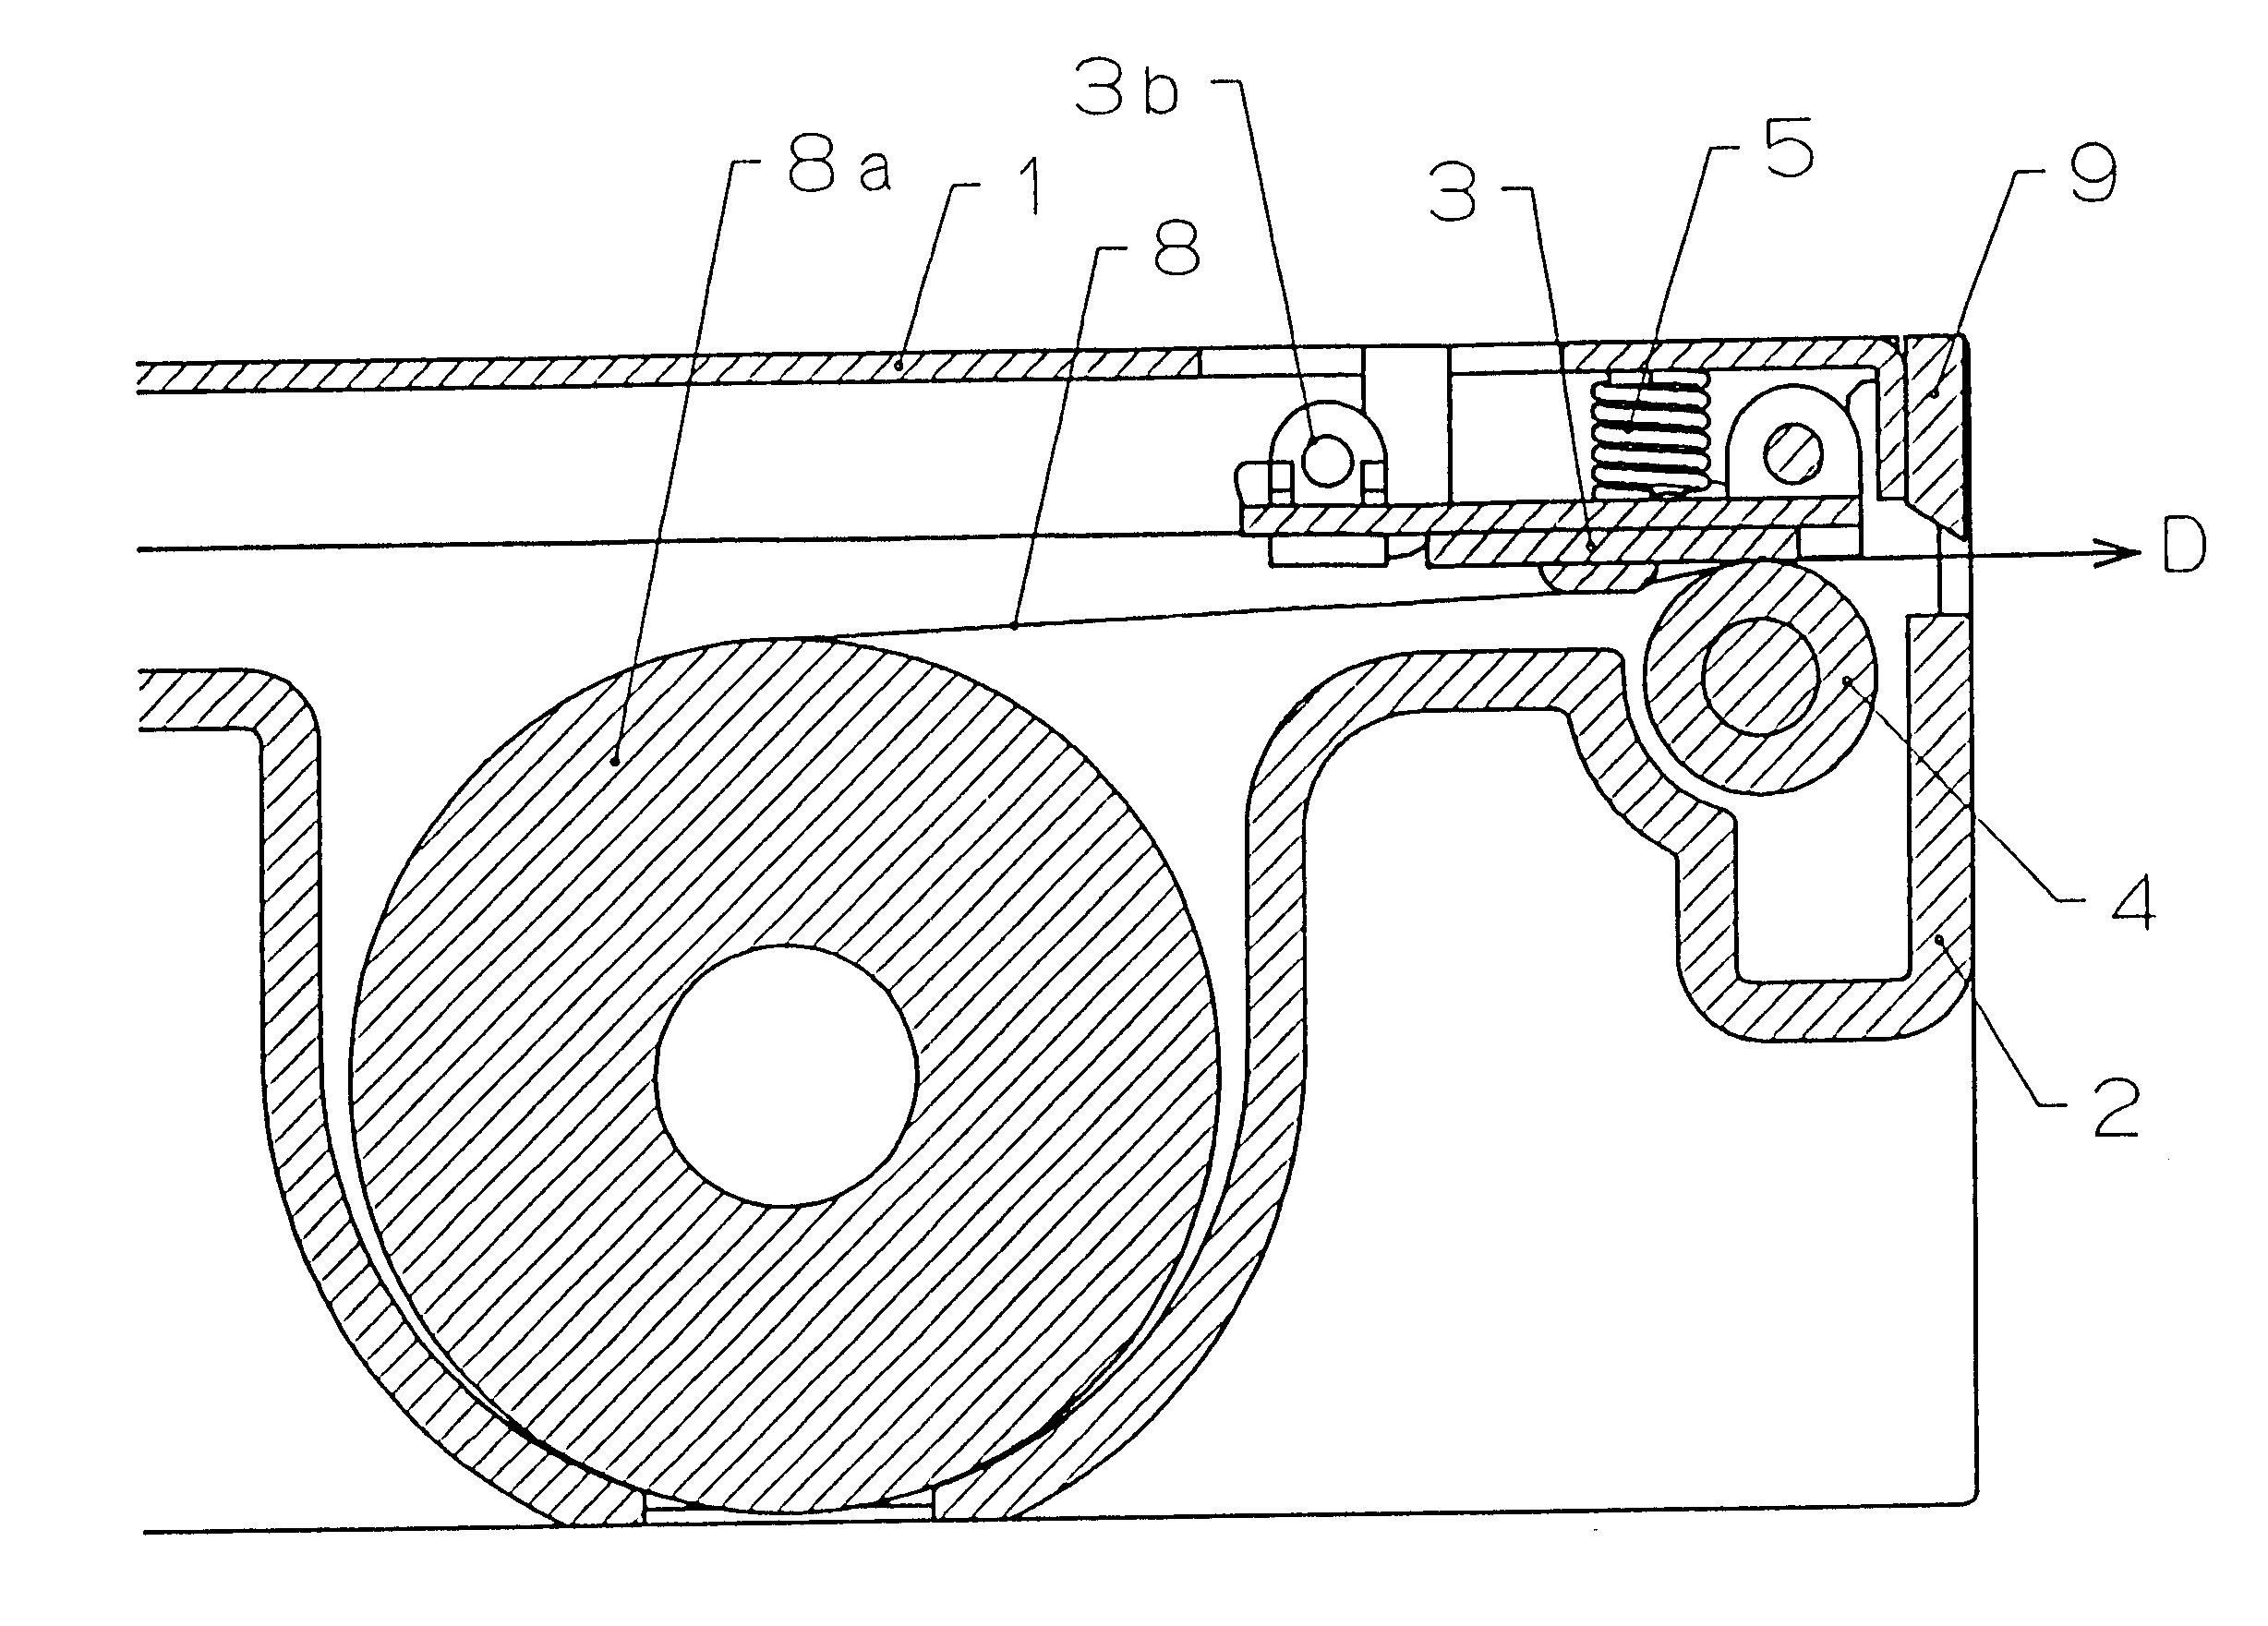 Drawer-type line thermal printer